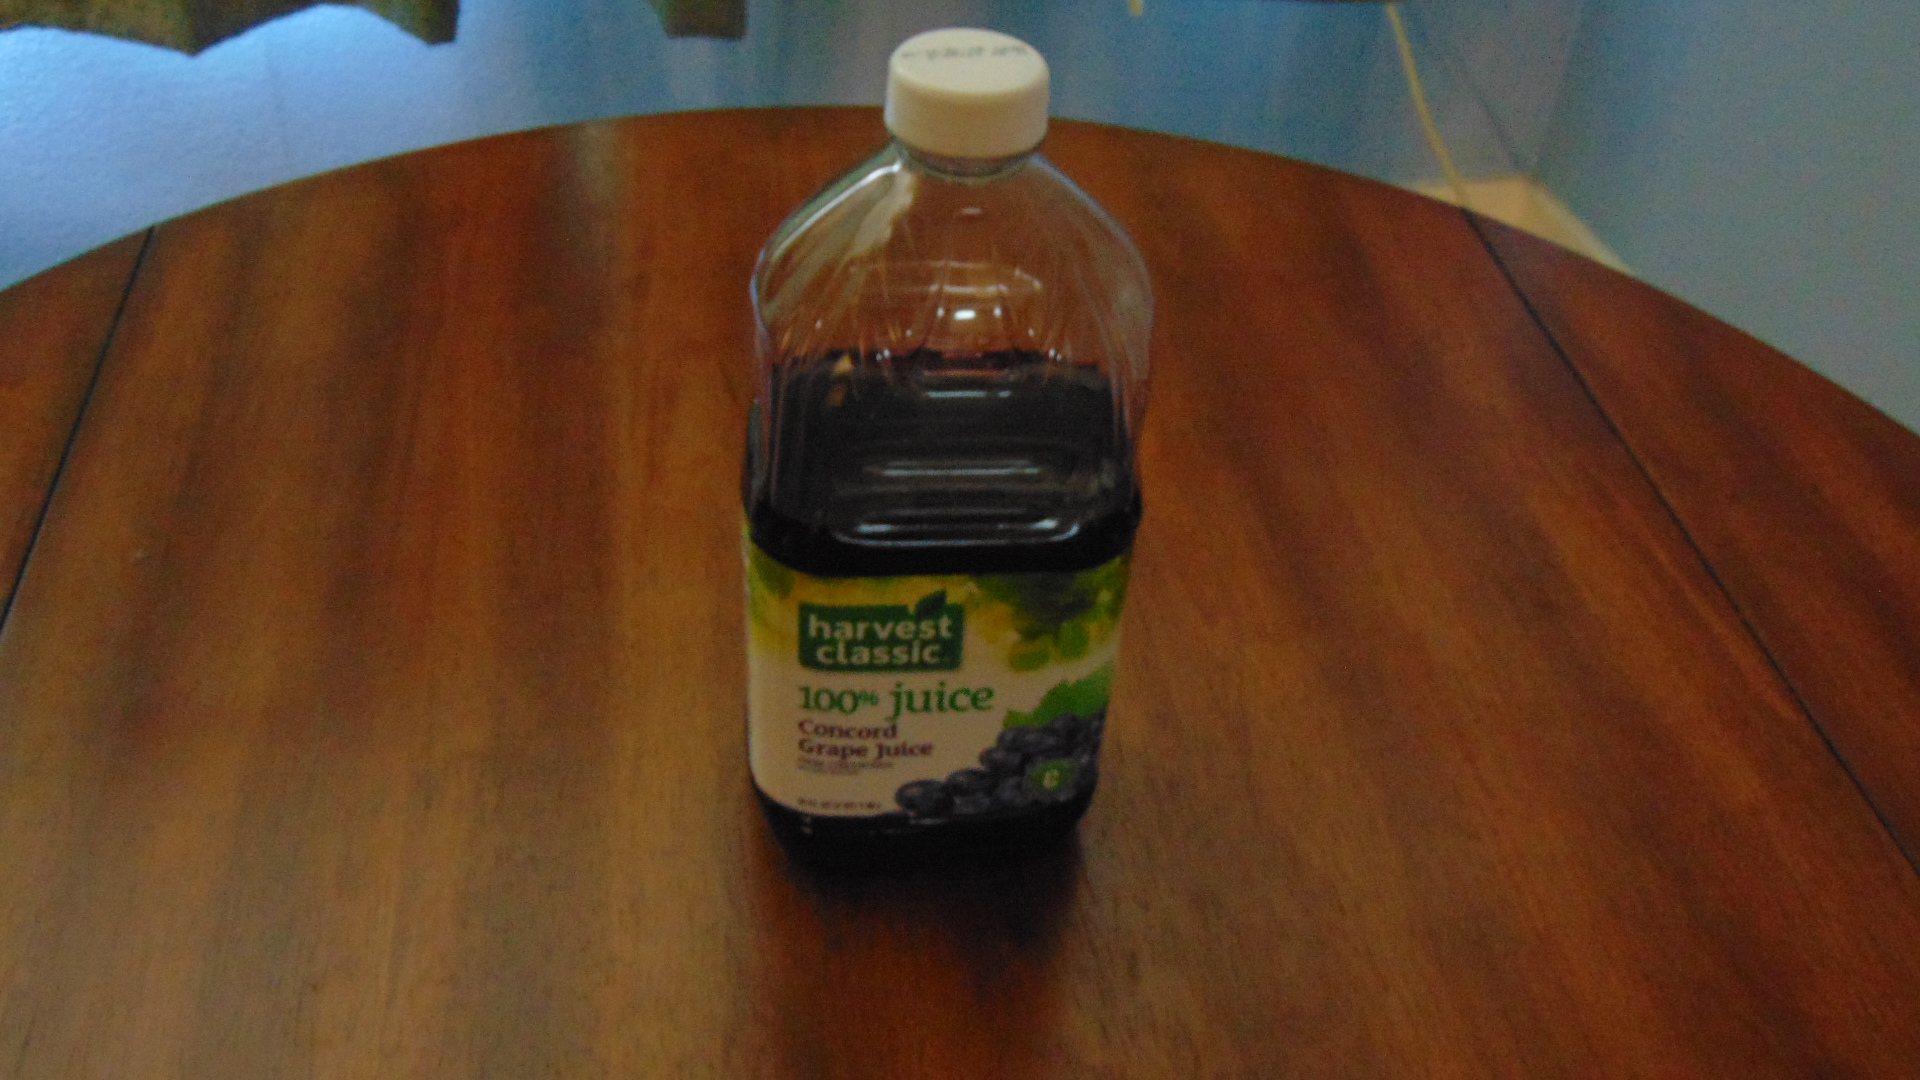 Bottle of Grape juice.